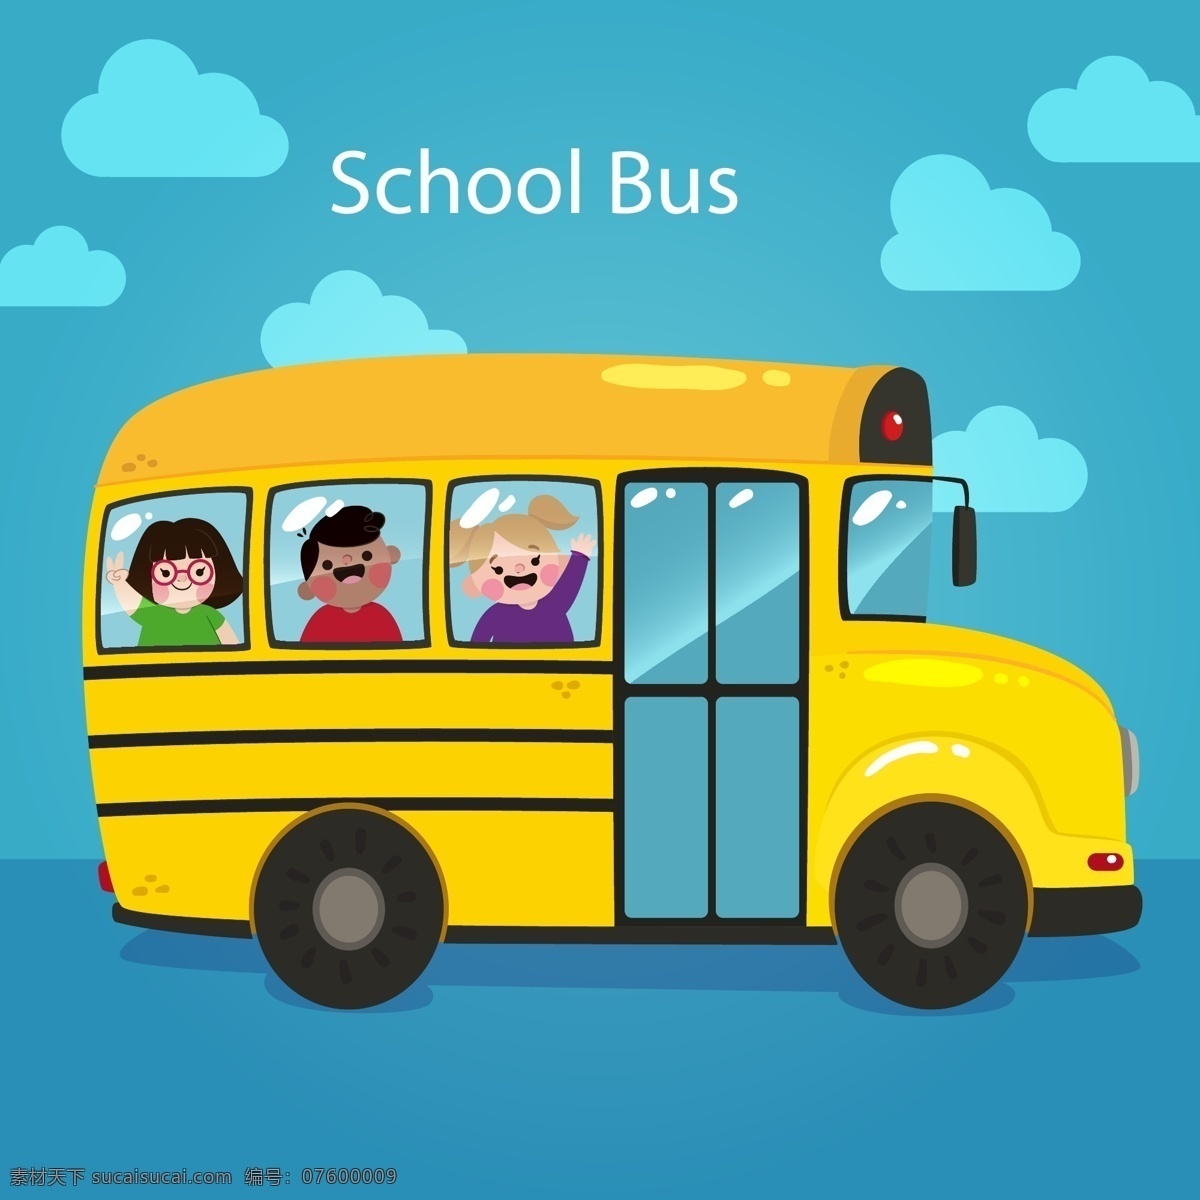 矢量校车 幼儿园校车 幼儿园 小朋友 接送小朋友 接送学生 学车 巴士 学校巴士